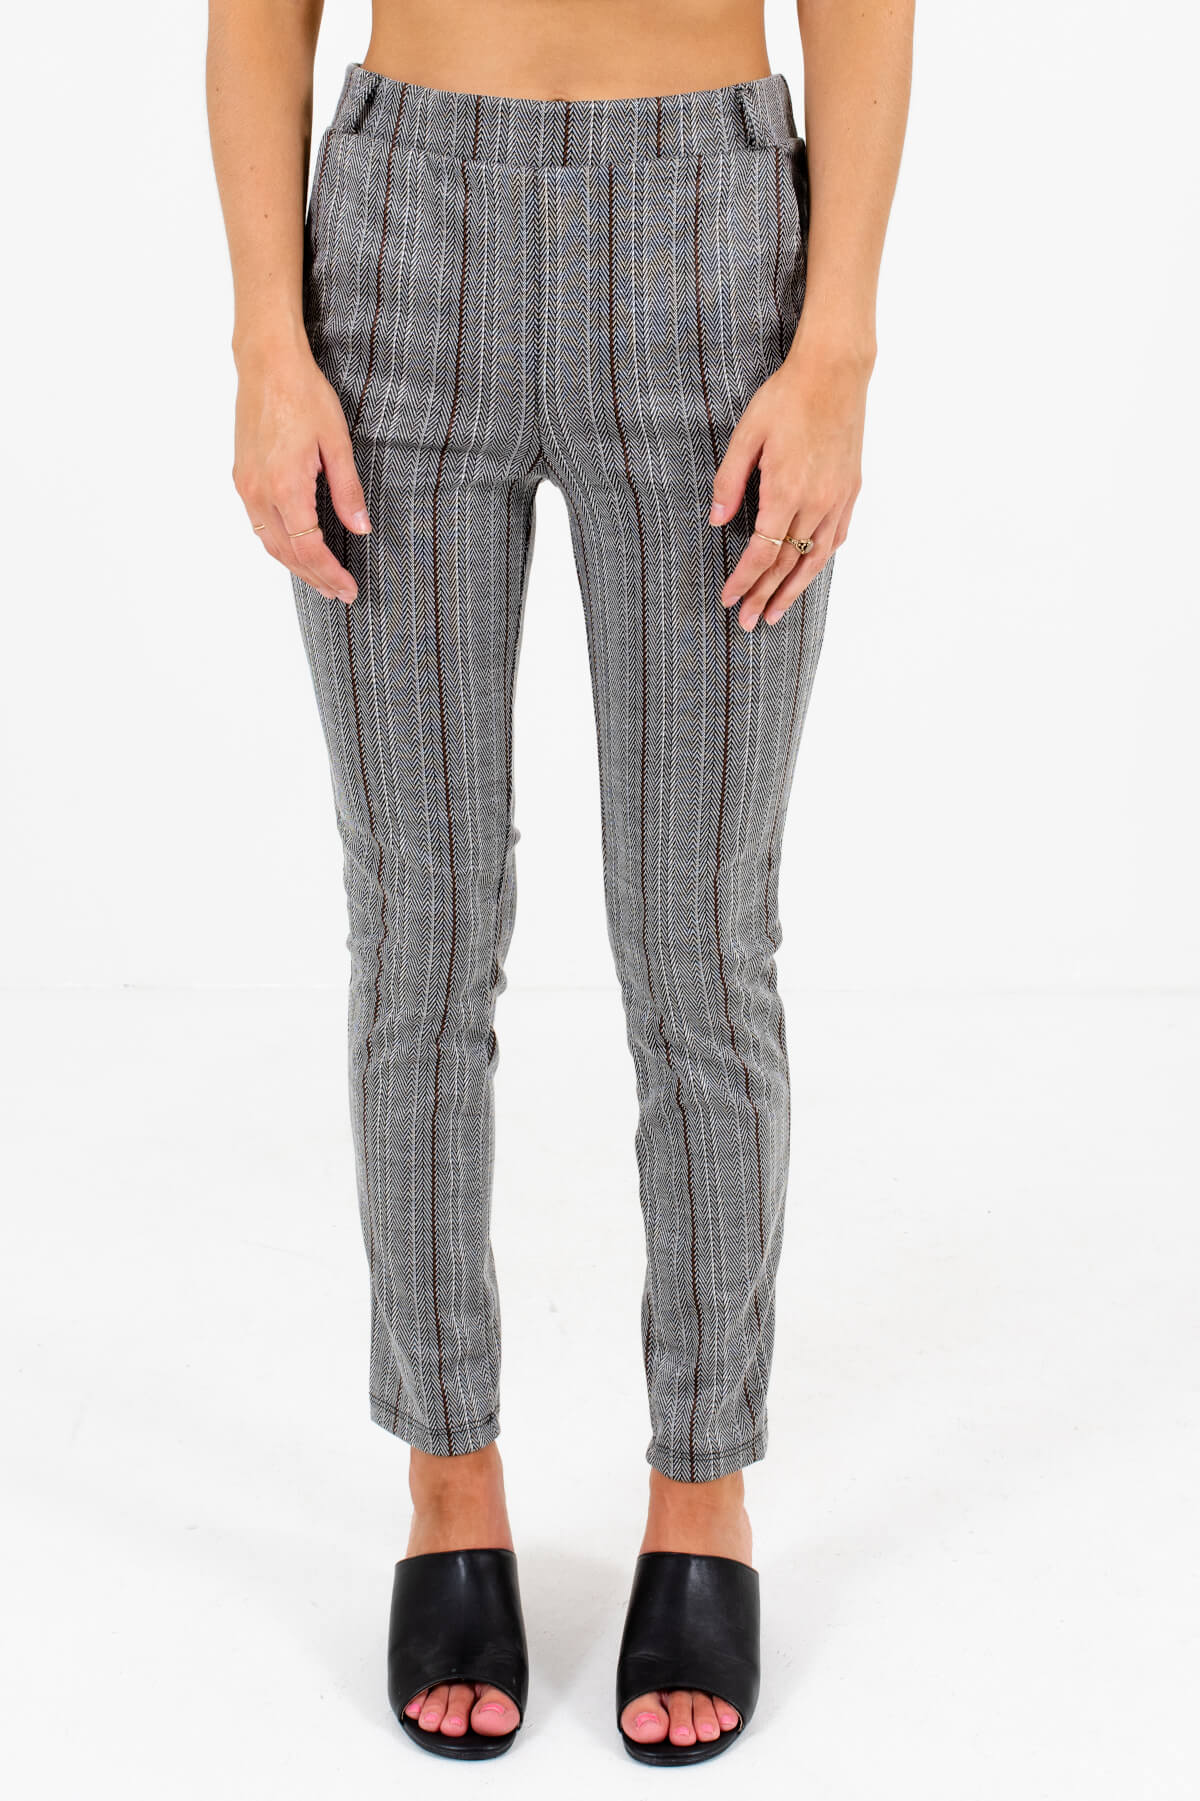 Gray Unique Striped Patterned Boutique Pants for Women